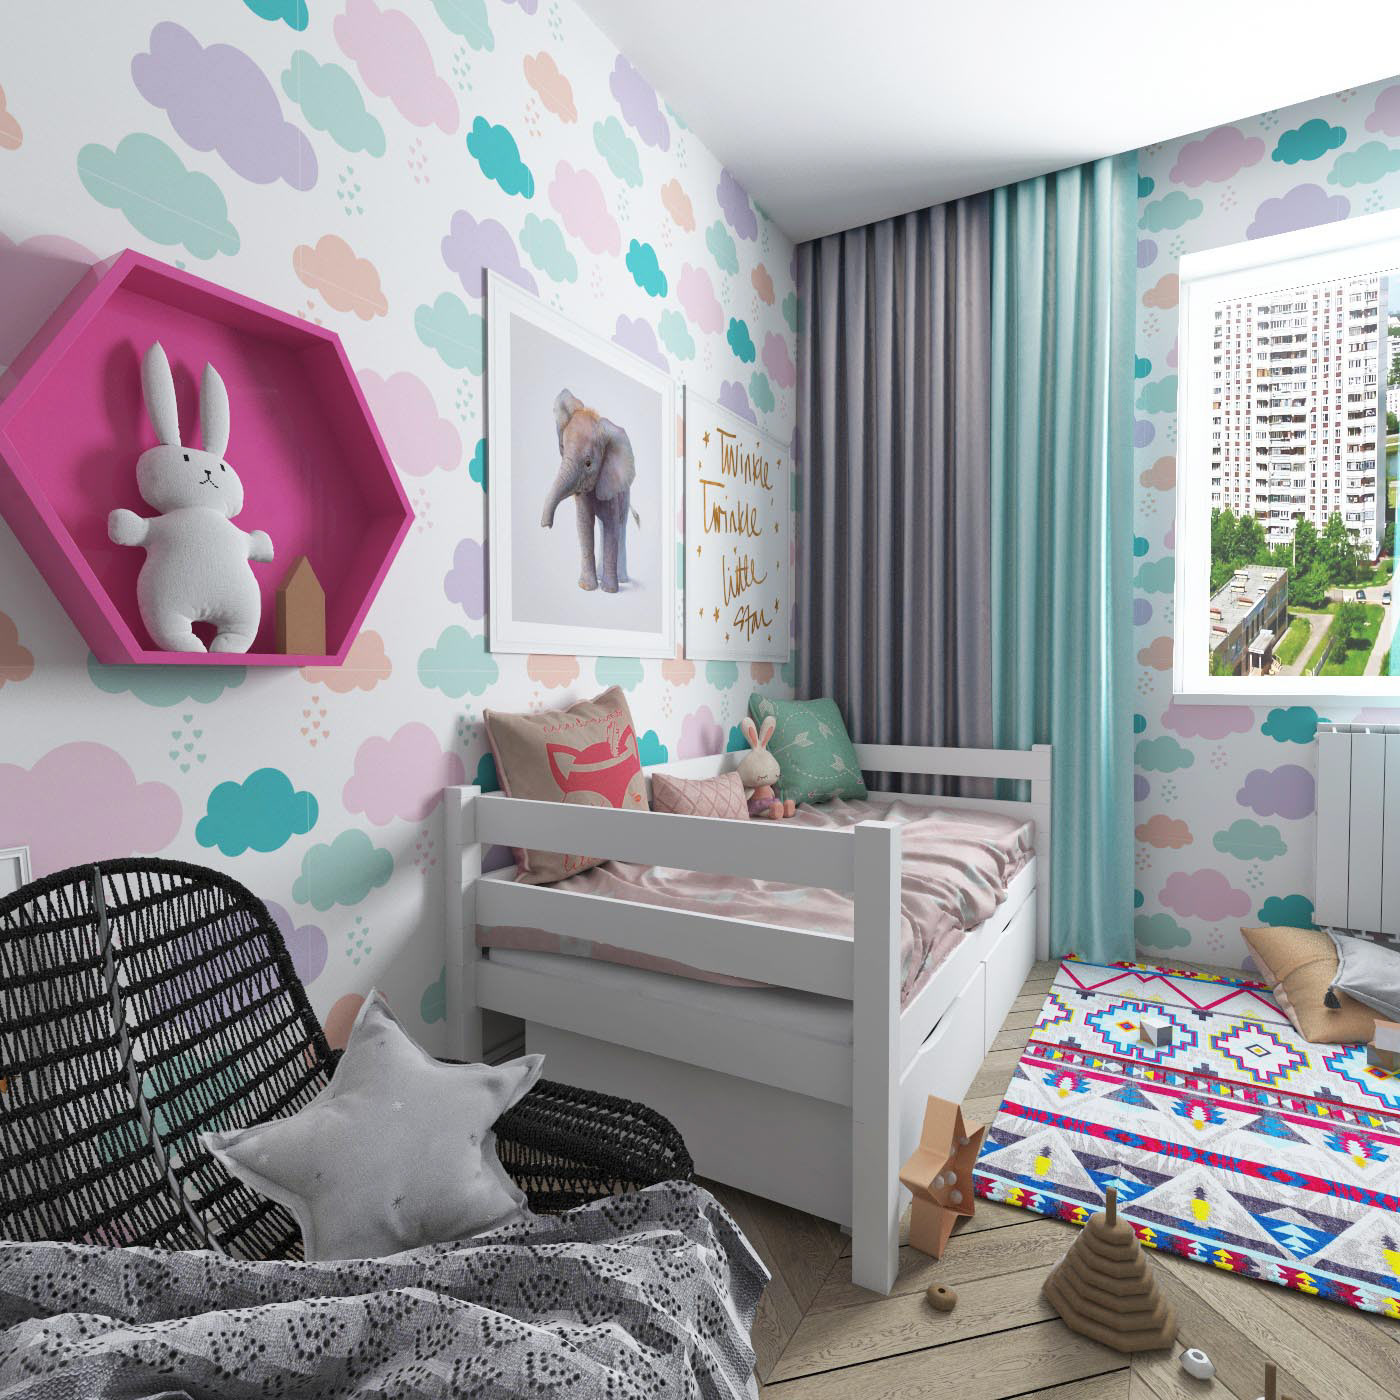 3ds max design Interior моделирование визуализация детские кровати детская комната дизайн кроваток интерьер детской моделирование кроваток